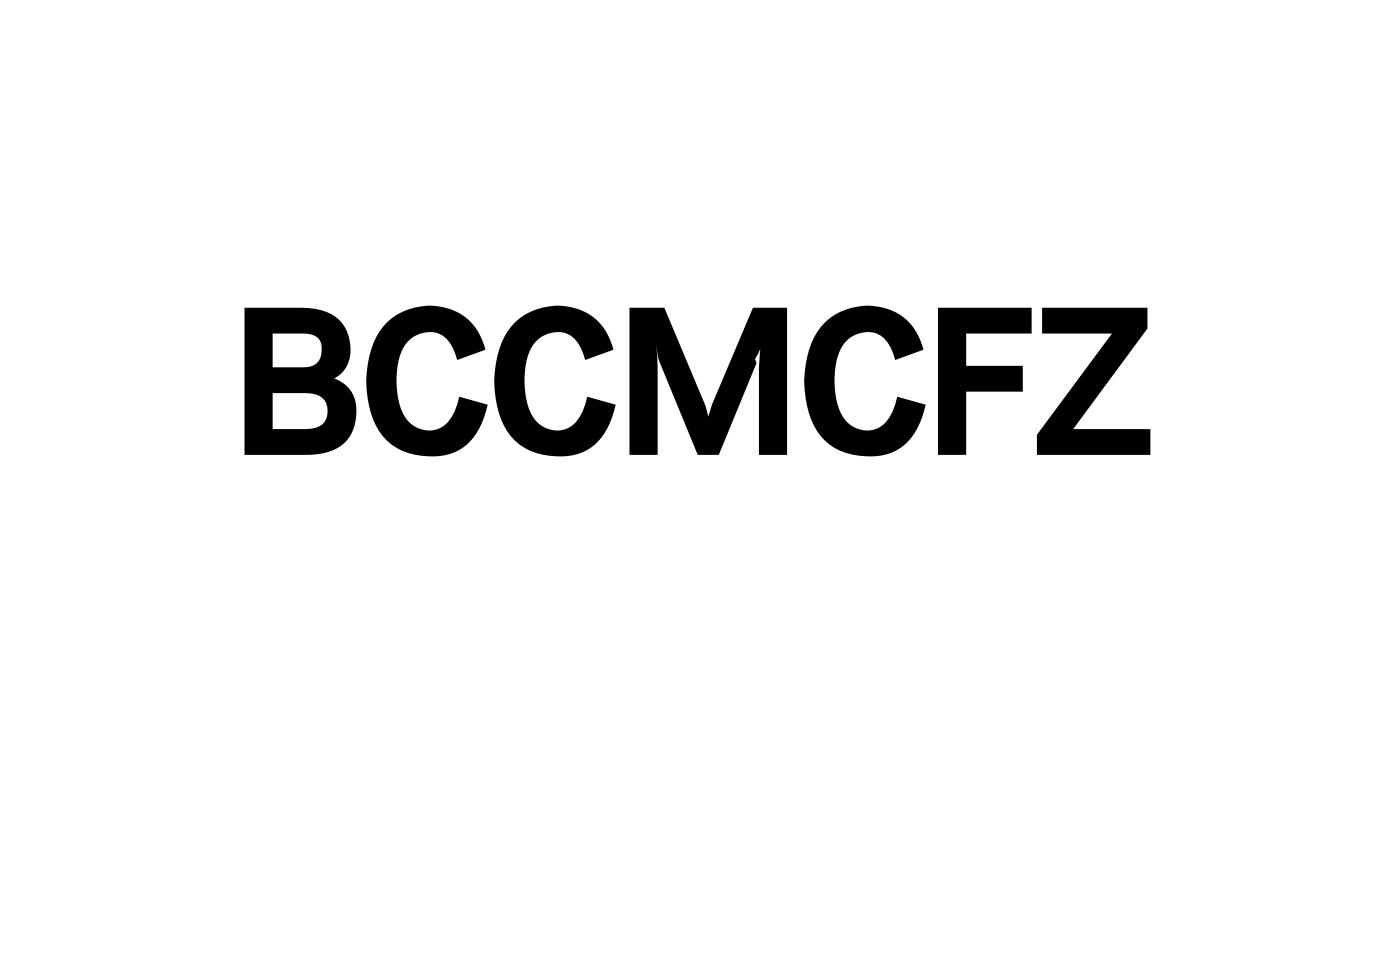 BCCMCFZ